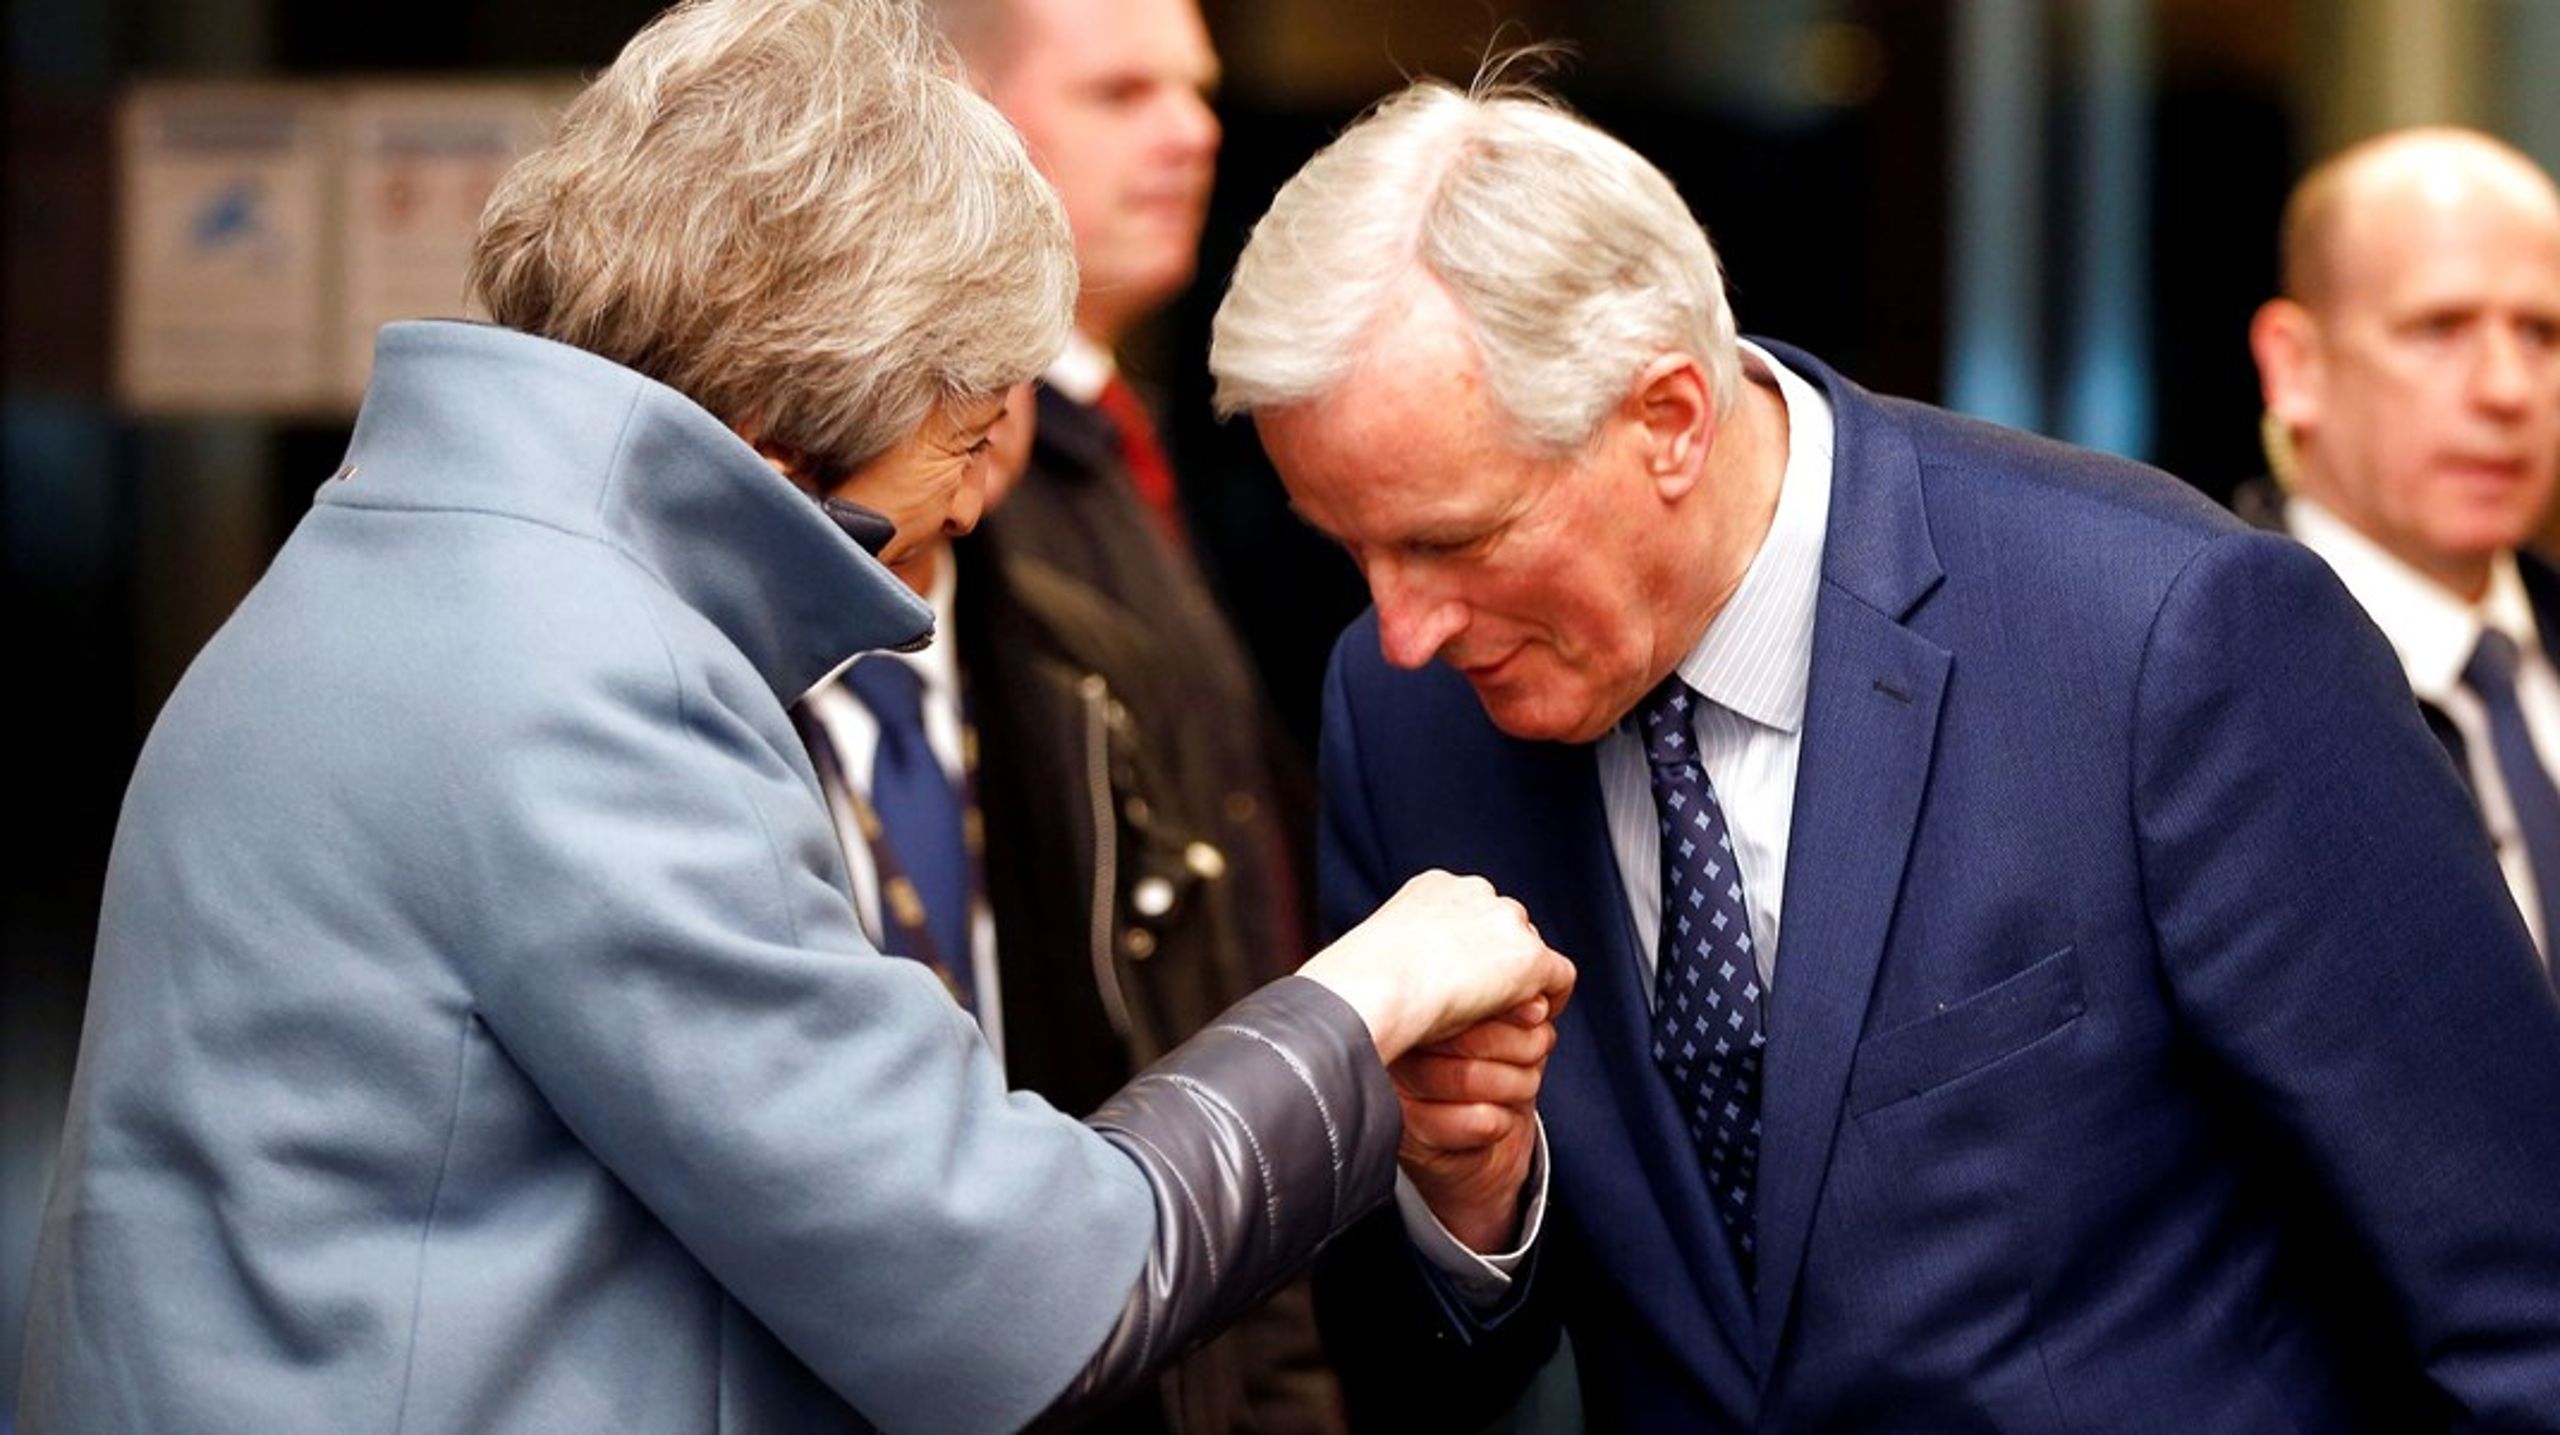 Bare fordi man står på hver sin side af en forhandling, er der ingen grund til ikke at være en gentleman, mener EU's Brexit-forhandler Michel Barnier, der hilser tidligere britisk premierminister Theresa May velkommen til et møde i Strasbourg.